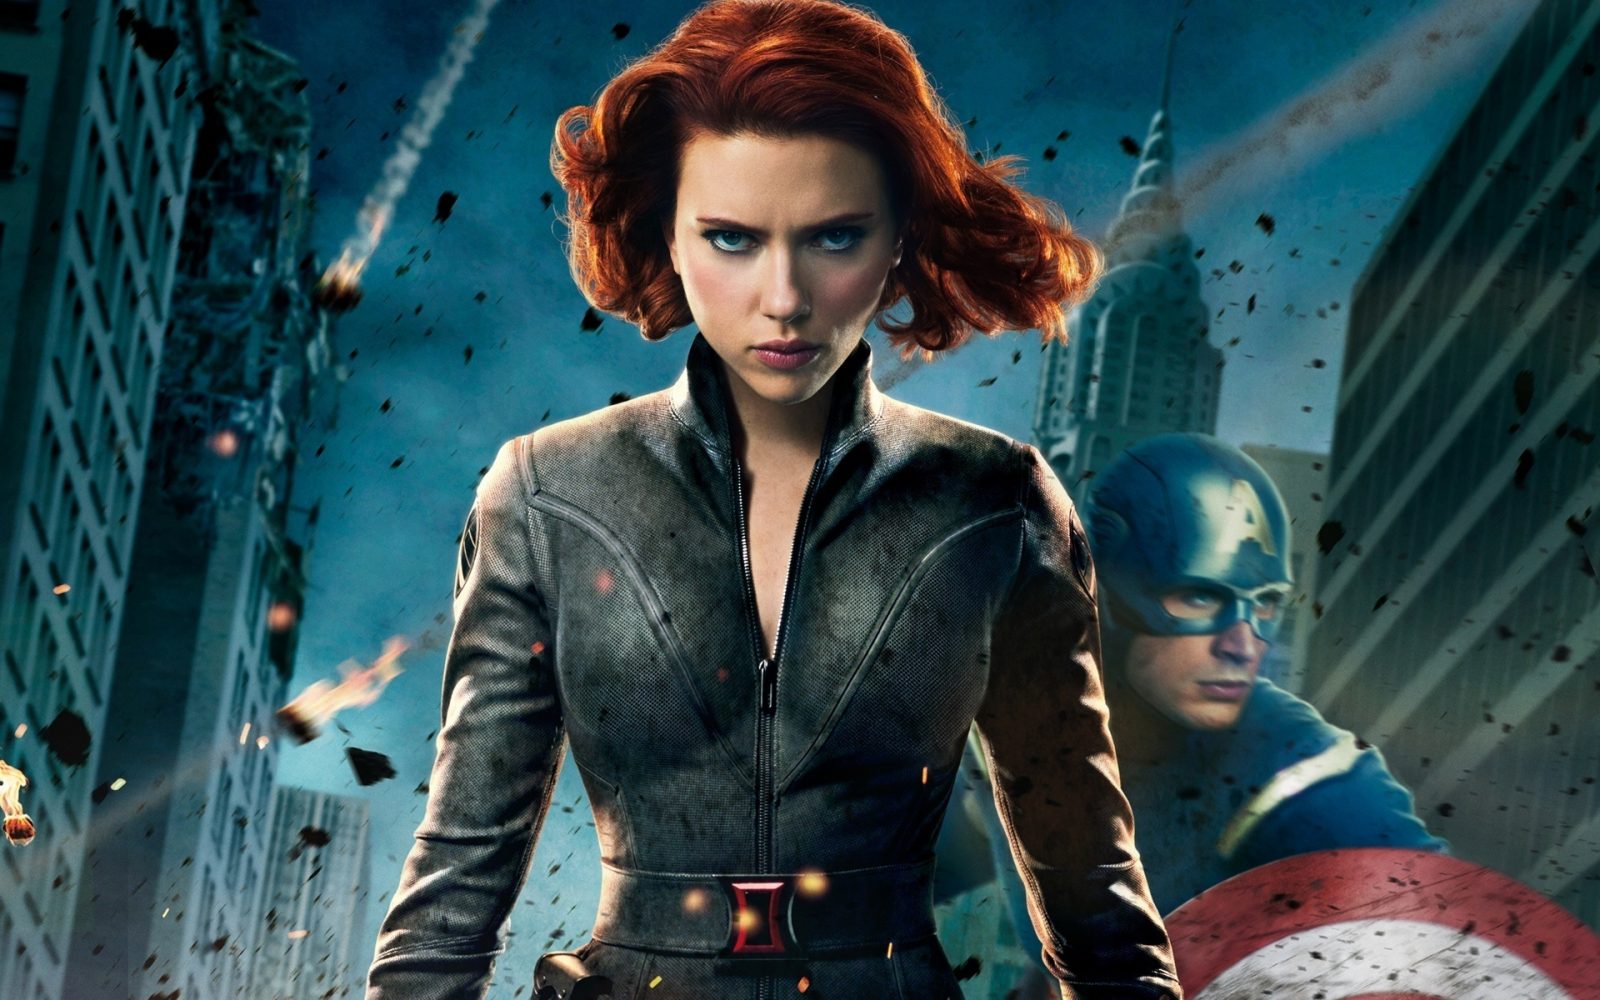 Scarlett Johansson phim: Biệt đội siêu anh hùng - Avengers (2012)